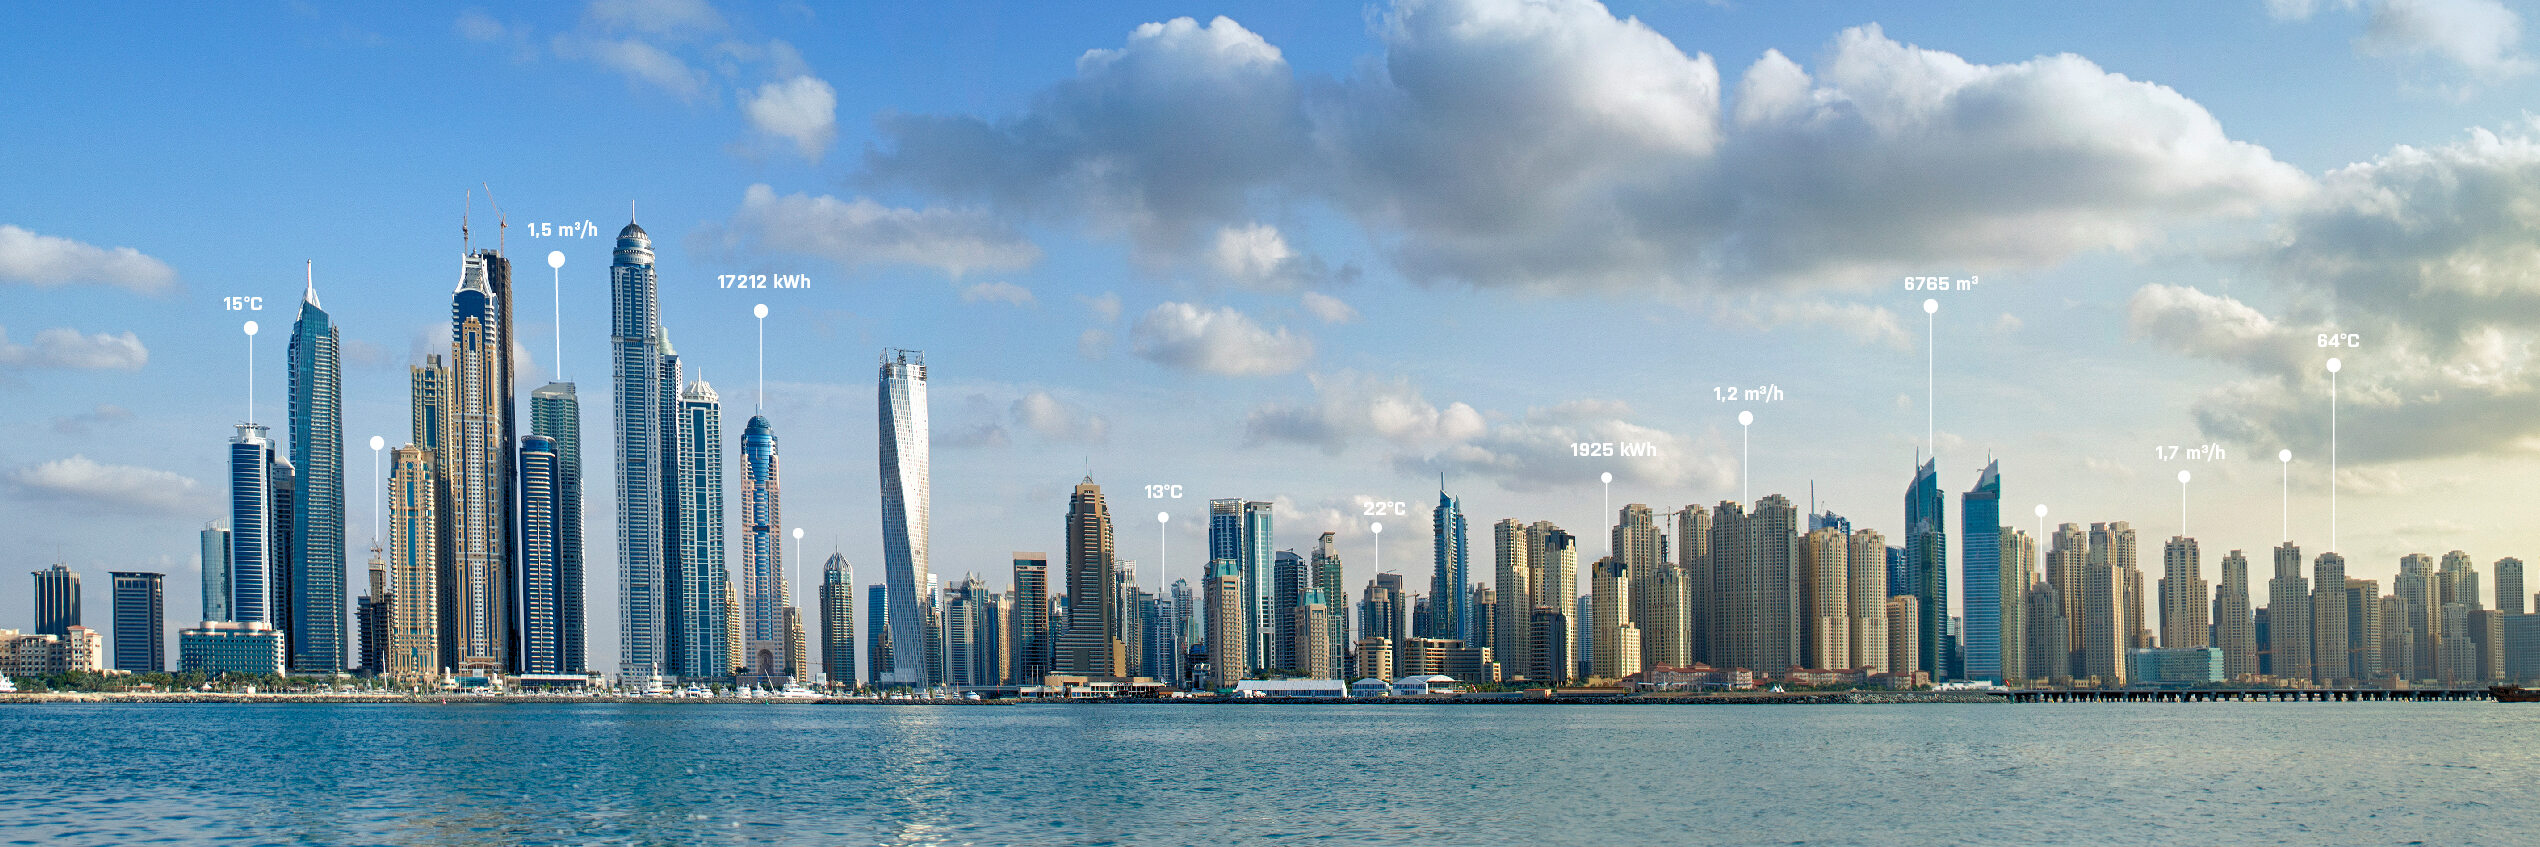 Dubaï : notre réseau régional en expansion